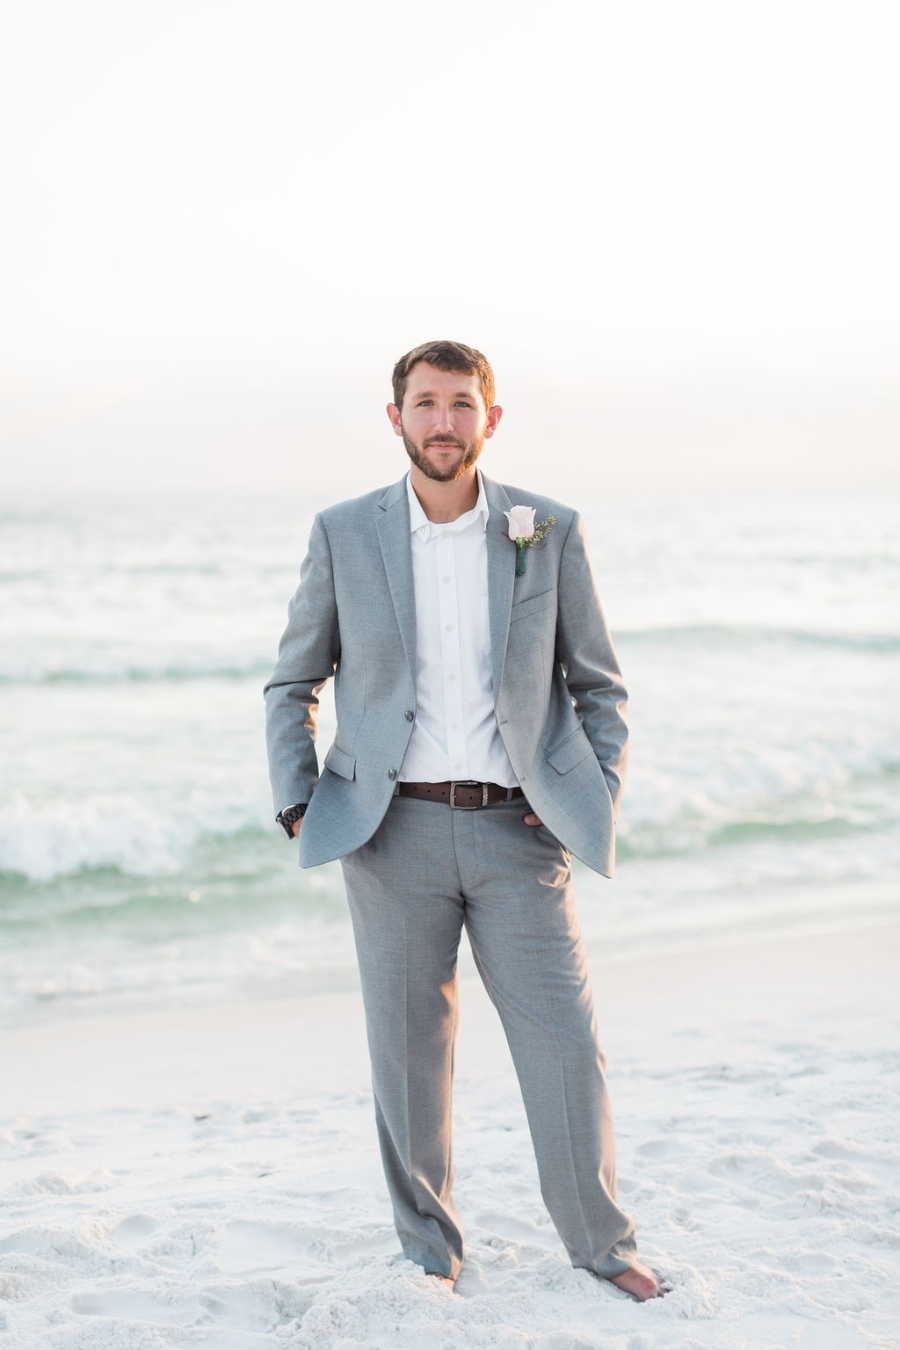 mens wear for beach wedding